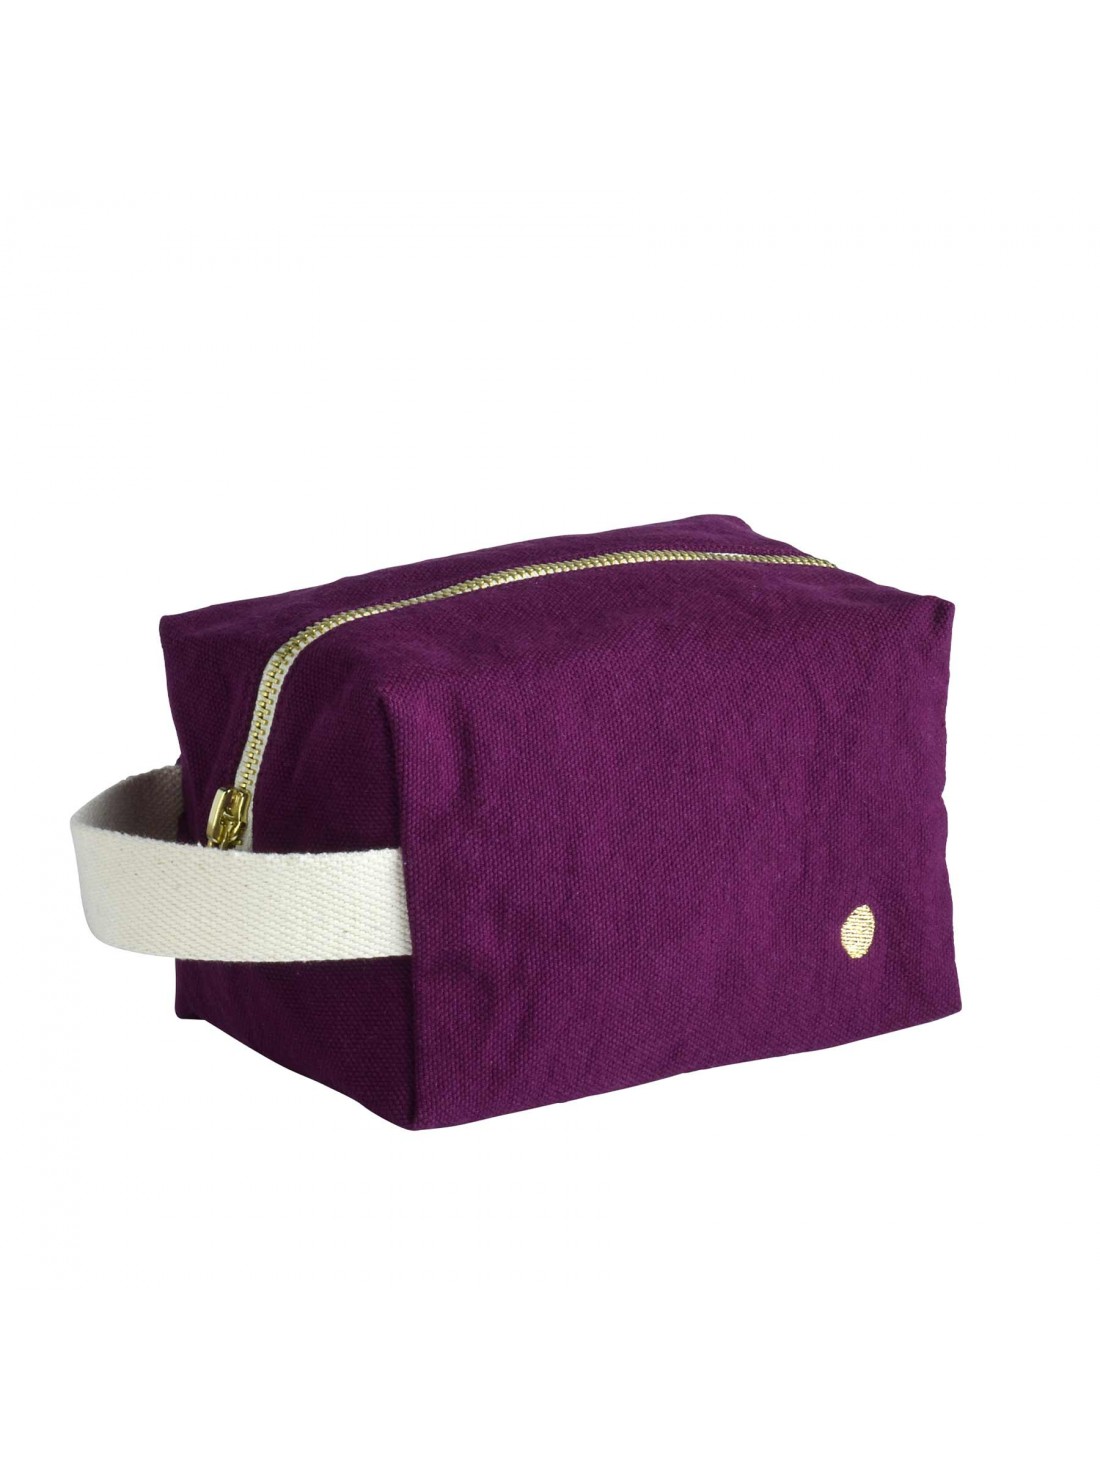 Trousse cube coton bio PM violette